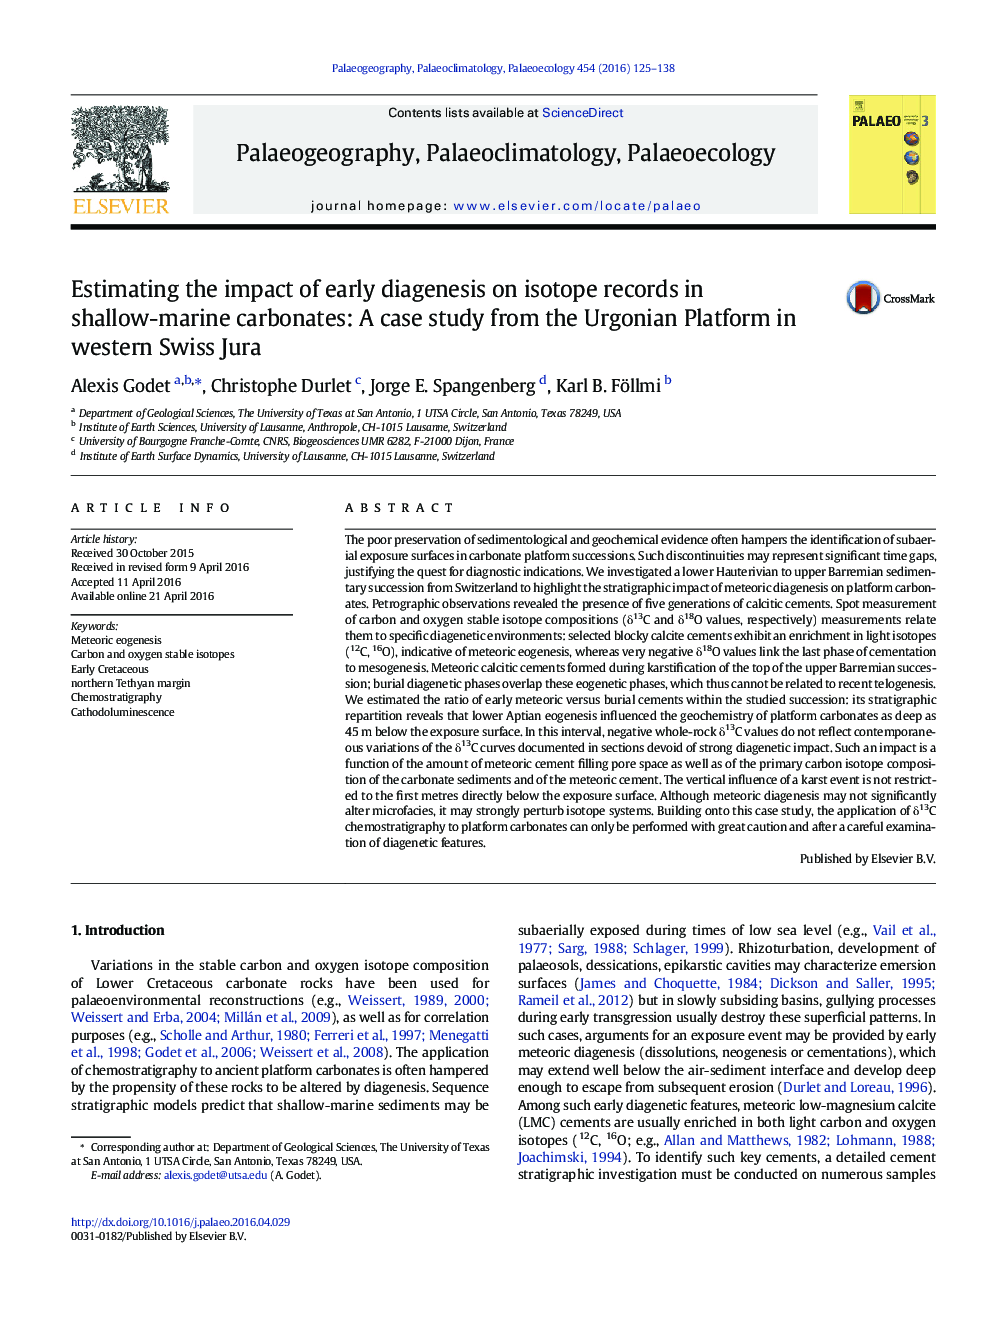 برآورد تاثیر دیاگنسیس اولیه بر روی اسناد ایزوتوپ در کربنات های کم عمق دریایی: مطالعه موردی از پلت فرم اورگونین در جورای غرب سوئیس 